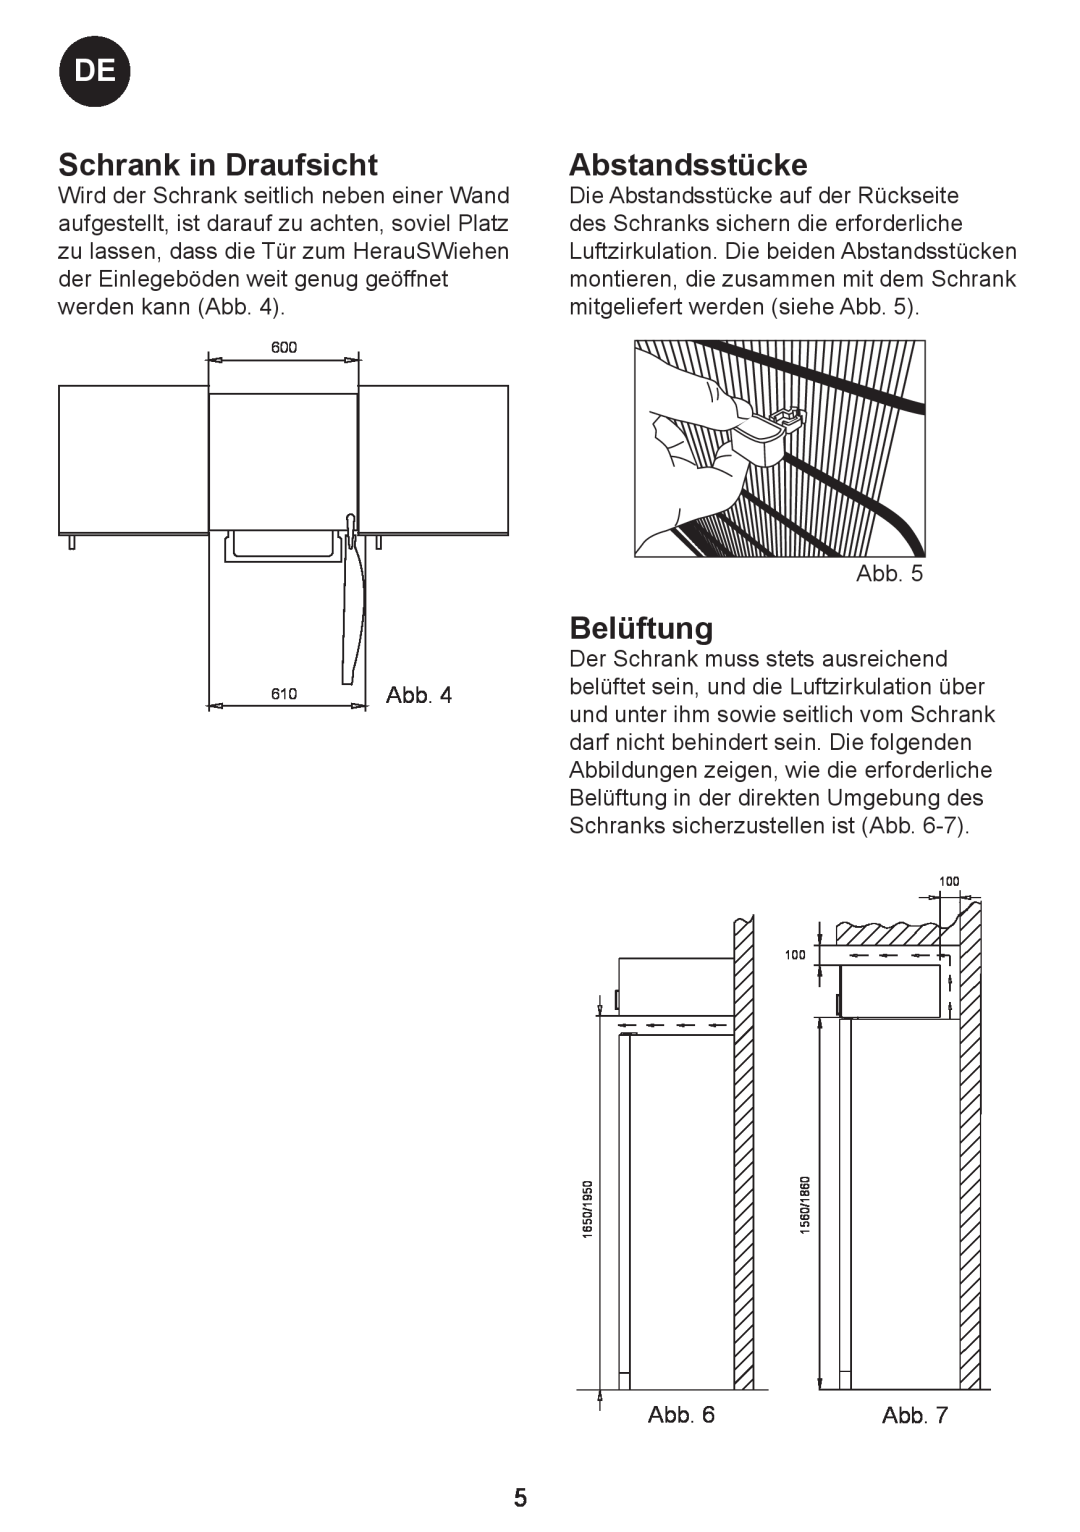 Smeg FA40X5 manual Schrank in Draufsicht, Abstandsstücke, Belüftung, Abb 